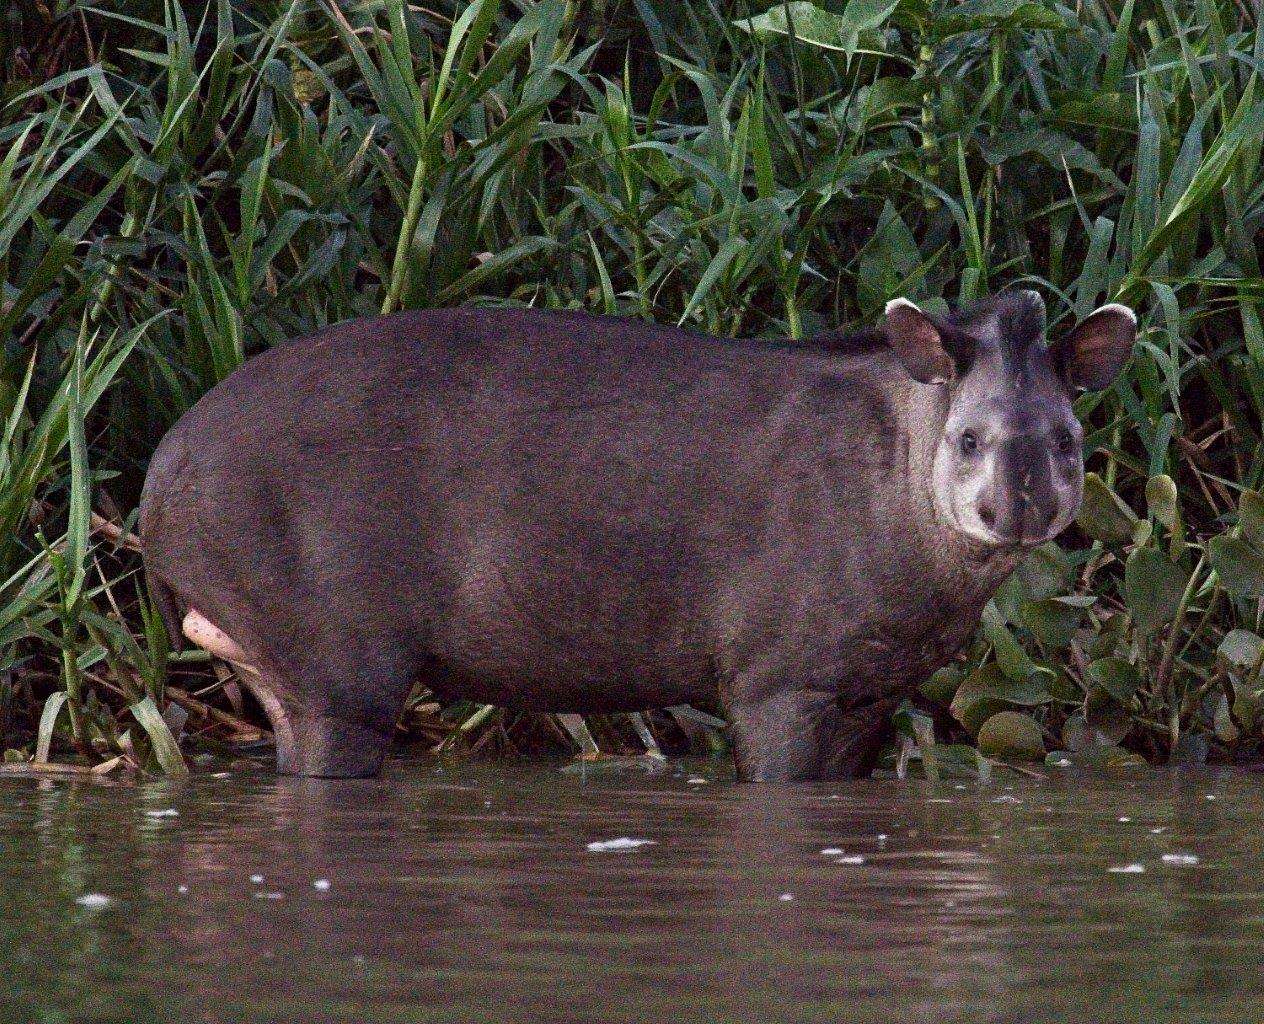 Tapir in the Pantanal